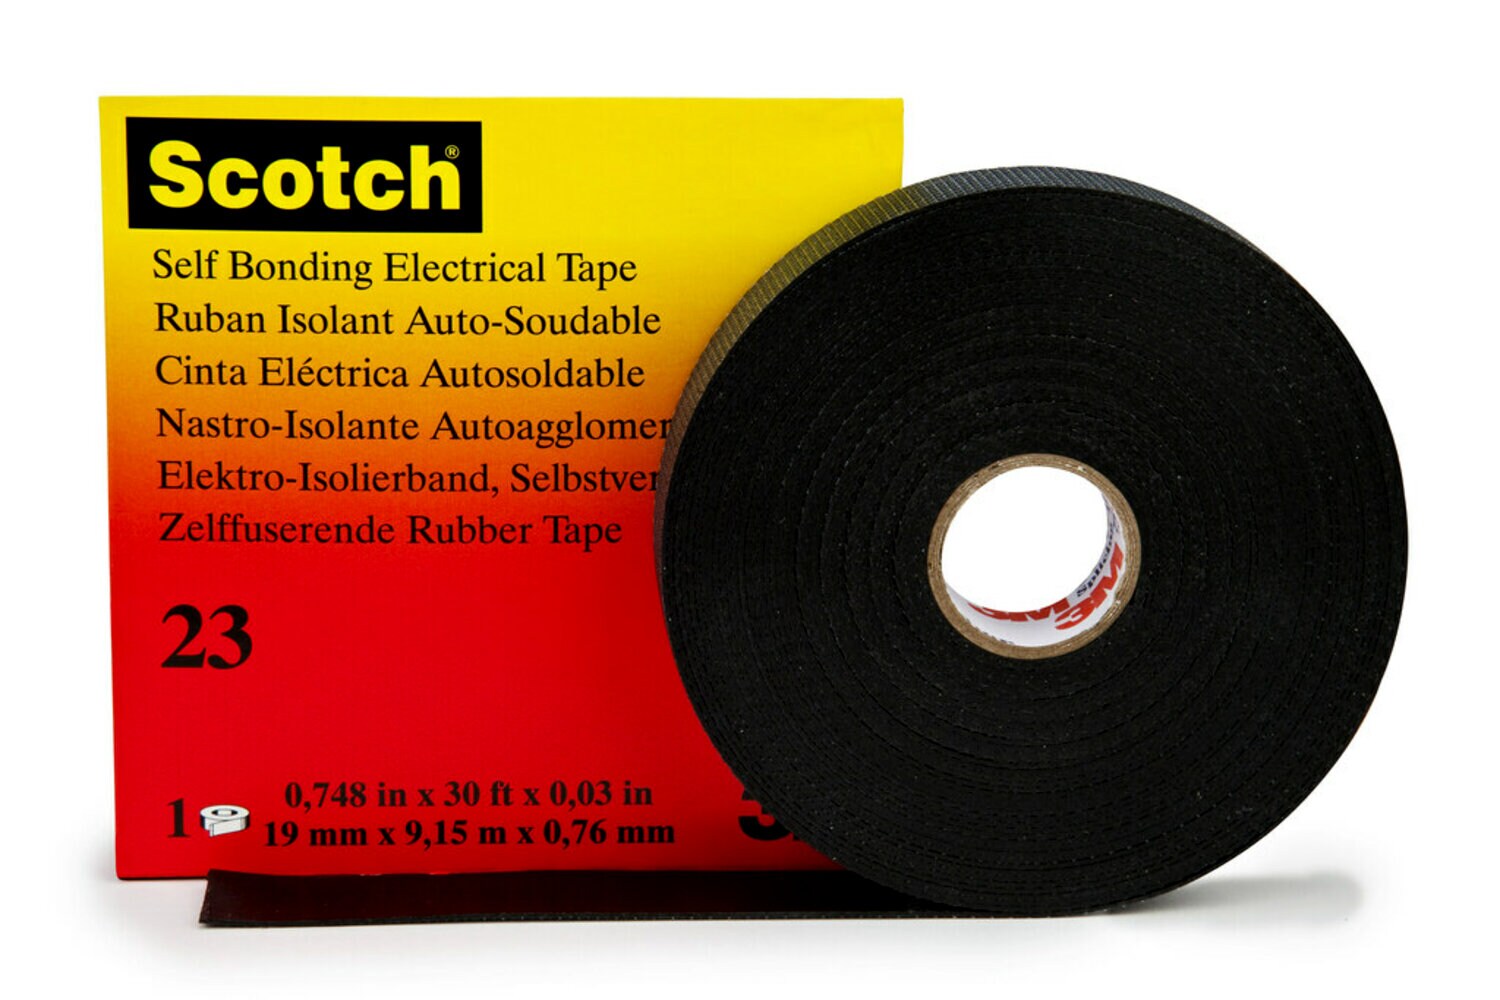 7000034850 - Scotch Rubber Splicing Tape 23, 1 in x 30 ft, Black, 32 rolls/Case